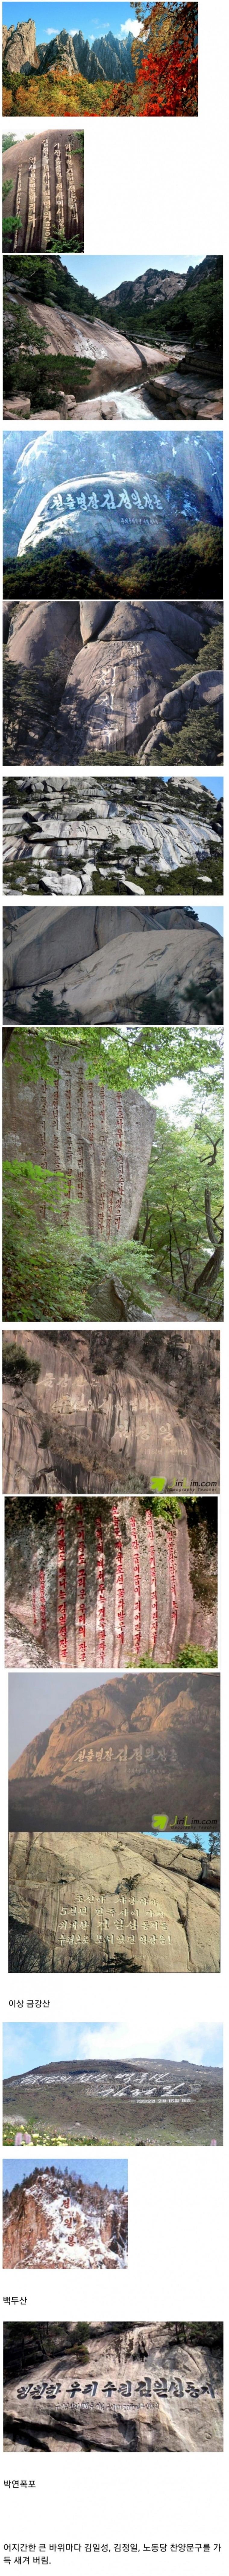 북한의 우상화 작업으로 훼손된 금강산